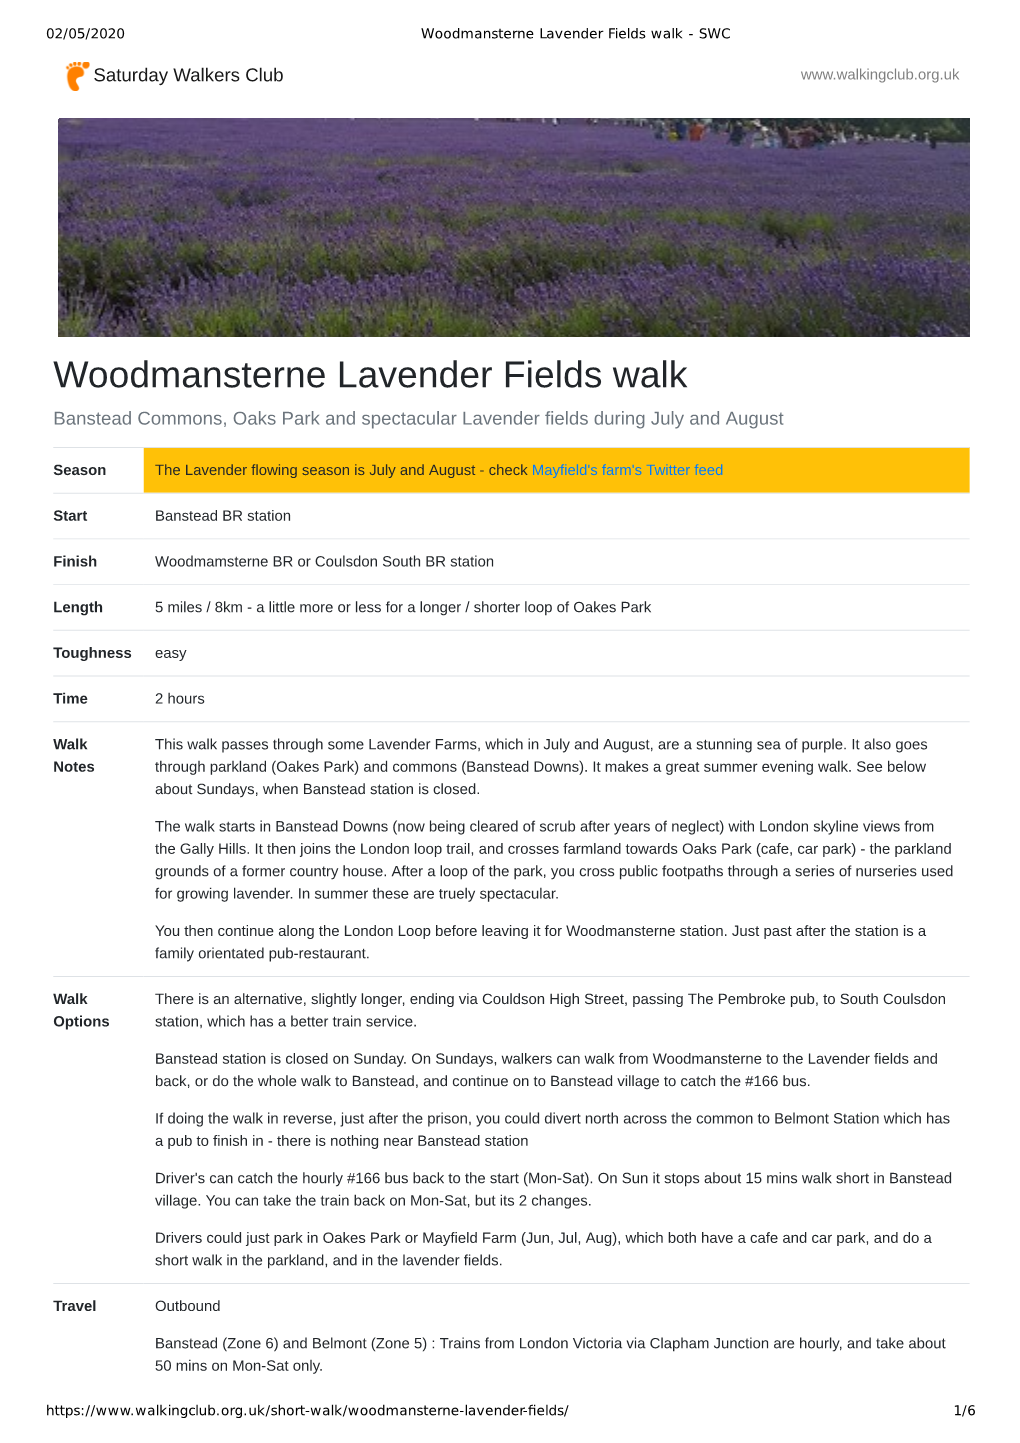 Woodmansterne Lavender Fields Walk - SWC